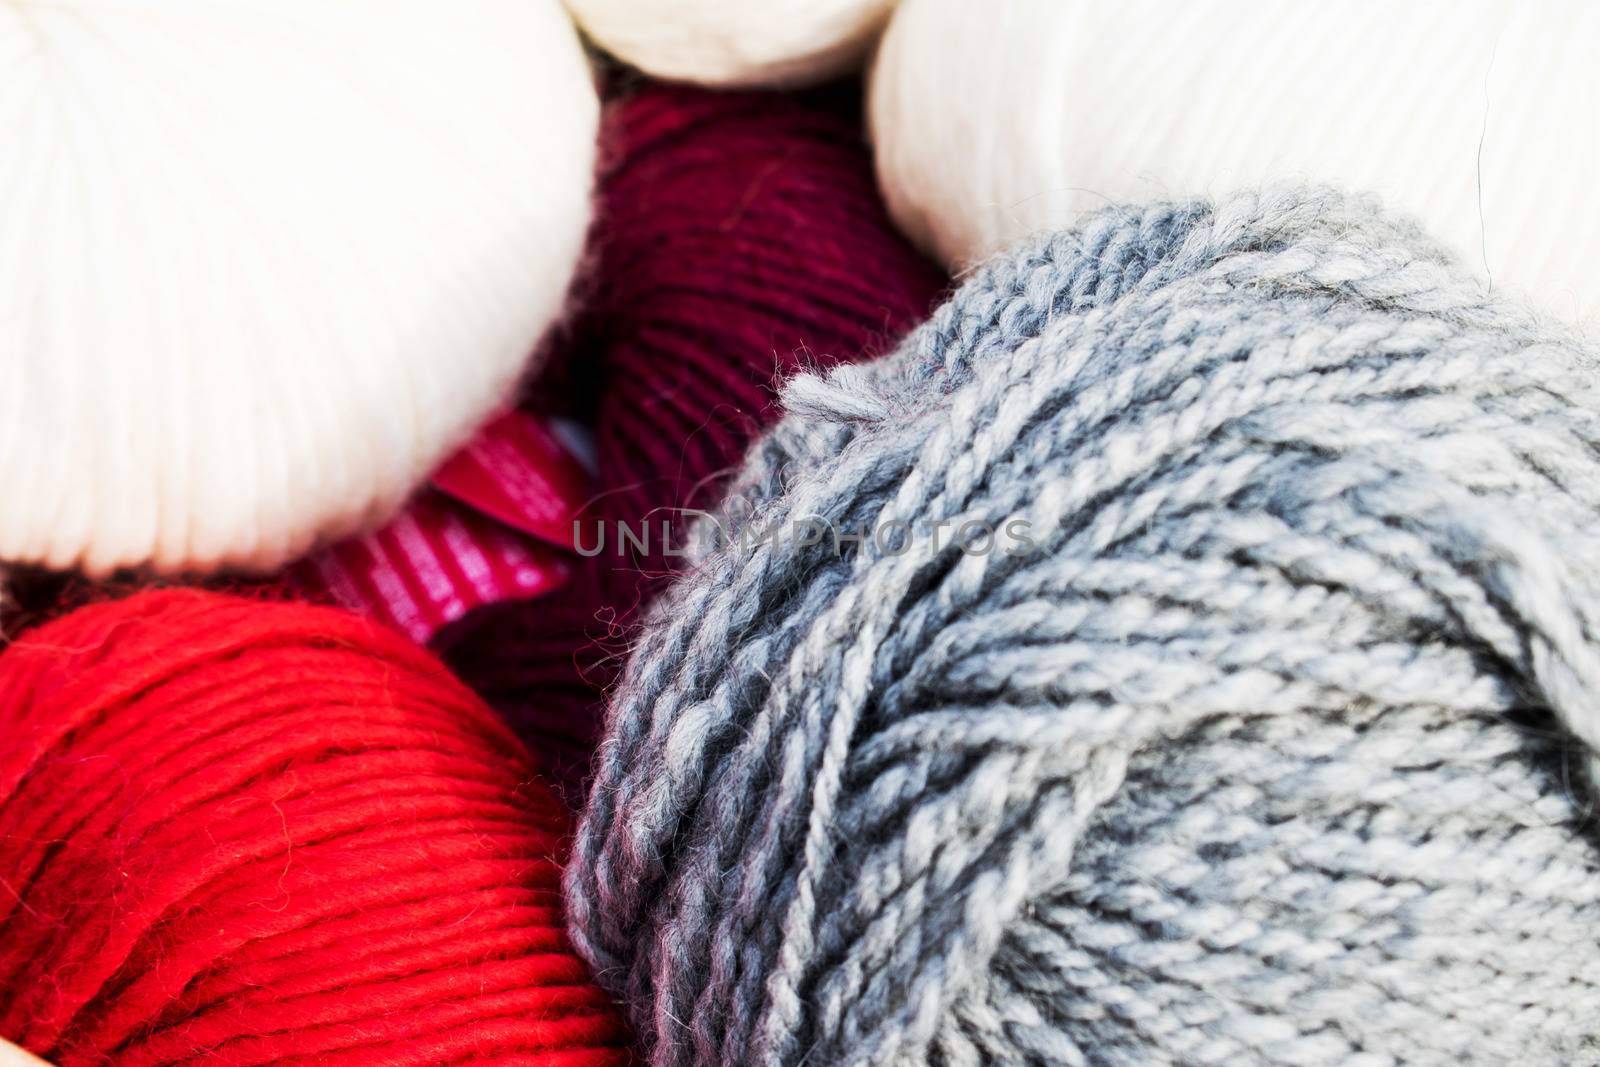 Choose a ball of yarn by federica_favara